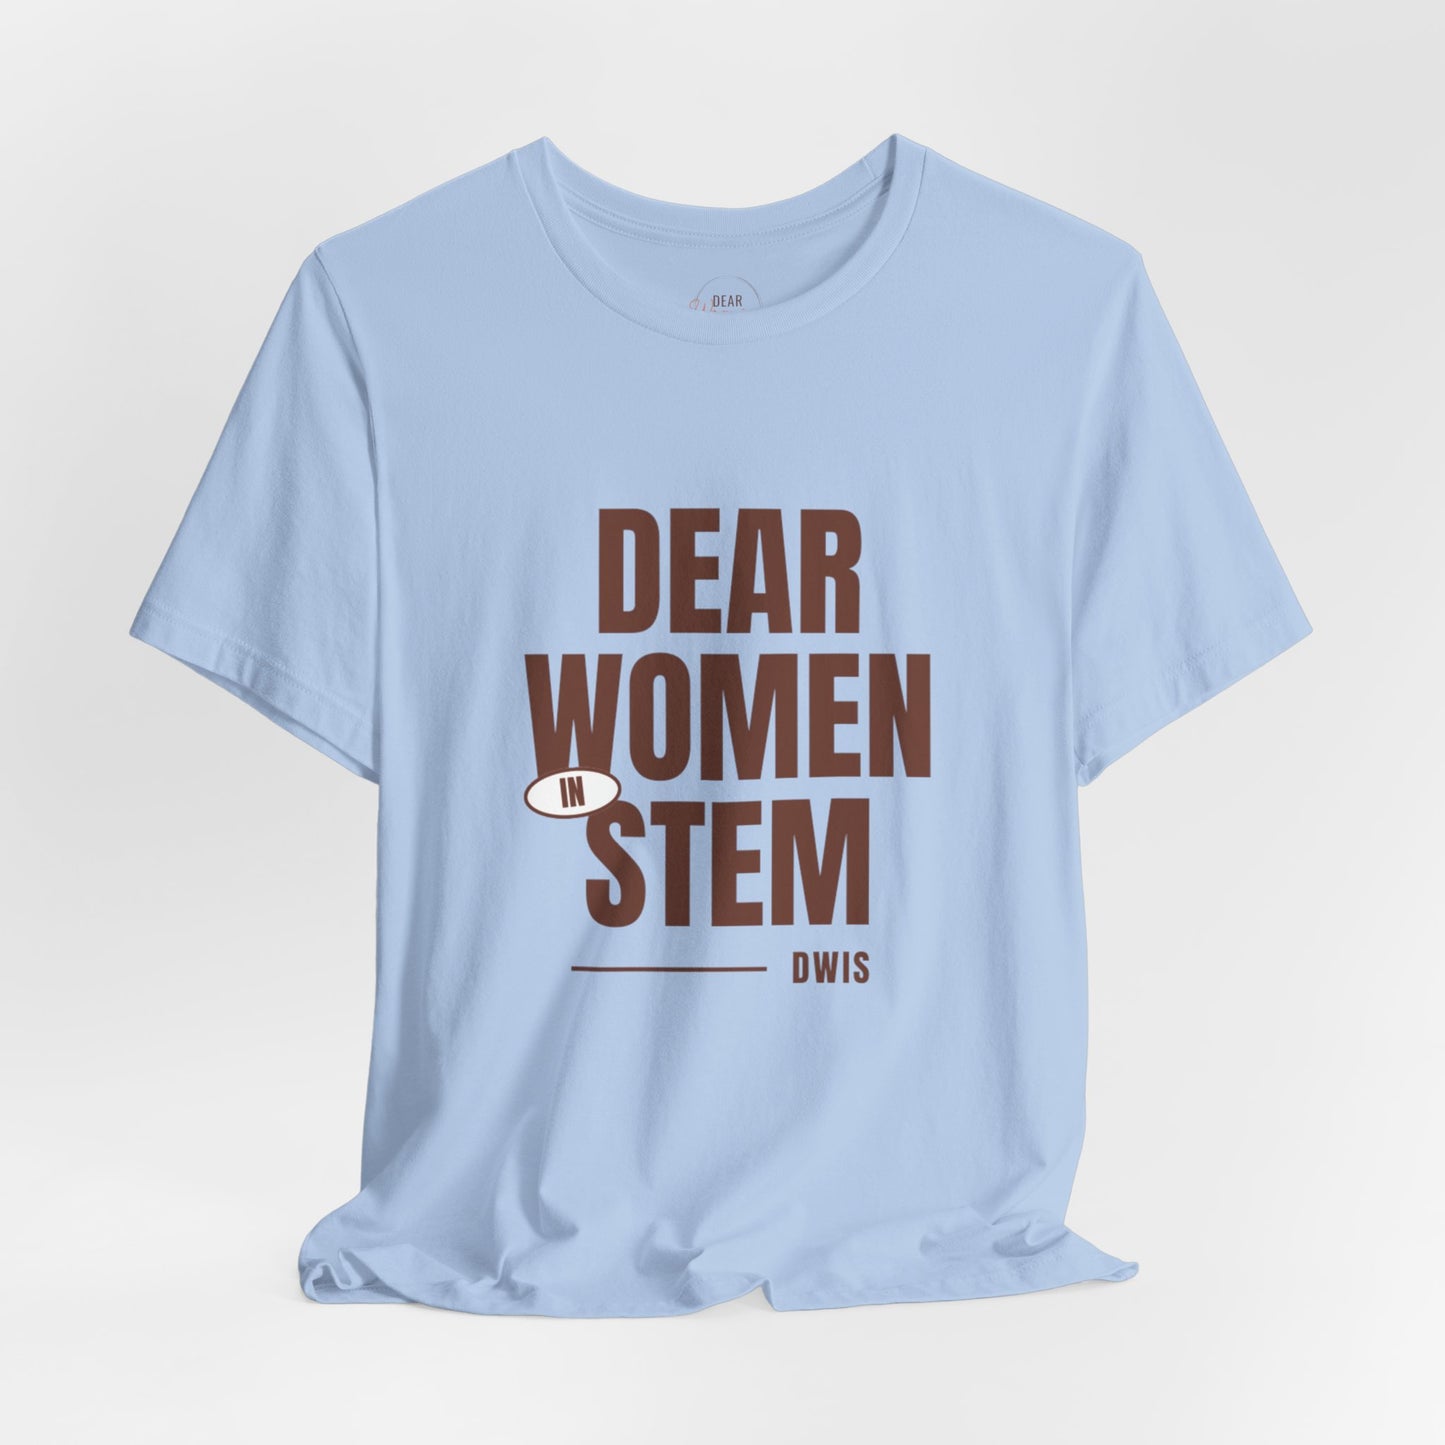 Dear Women in STEM Tee